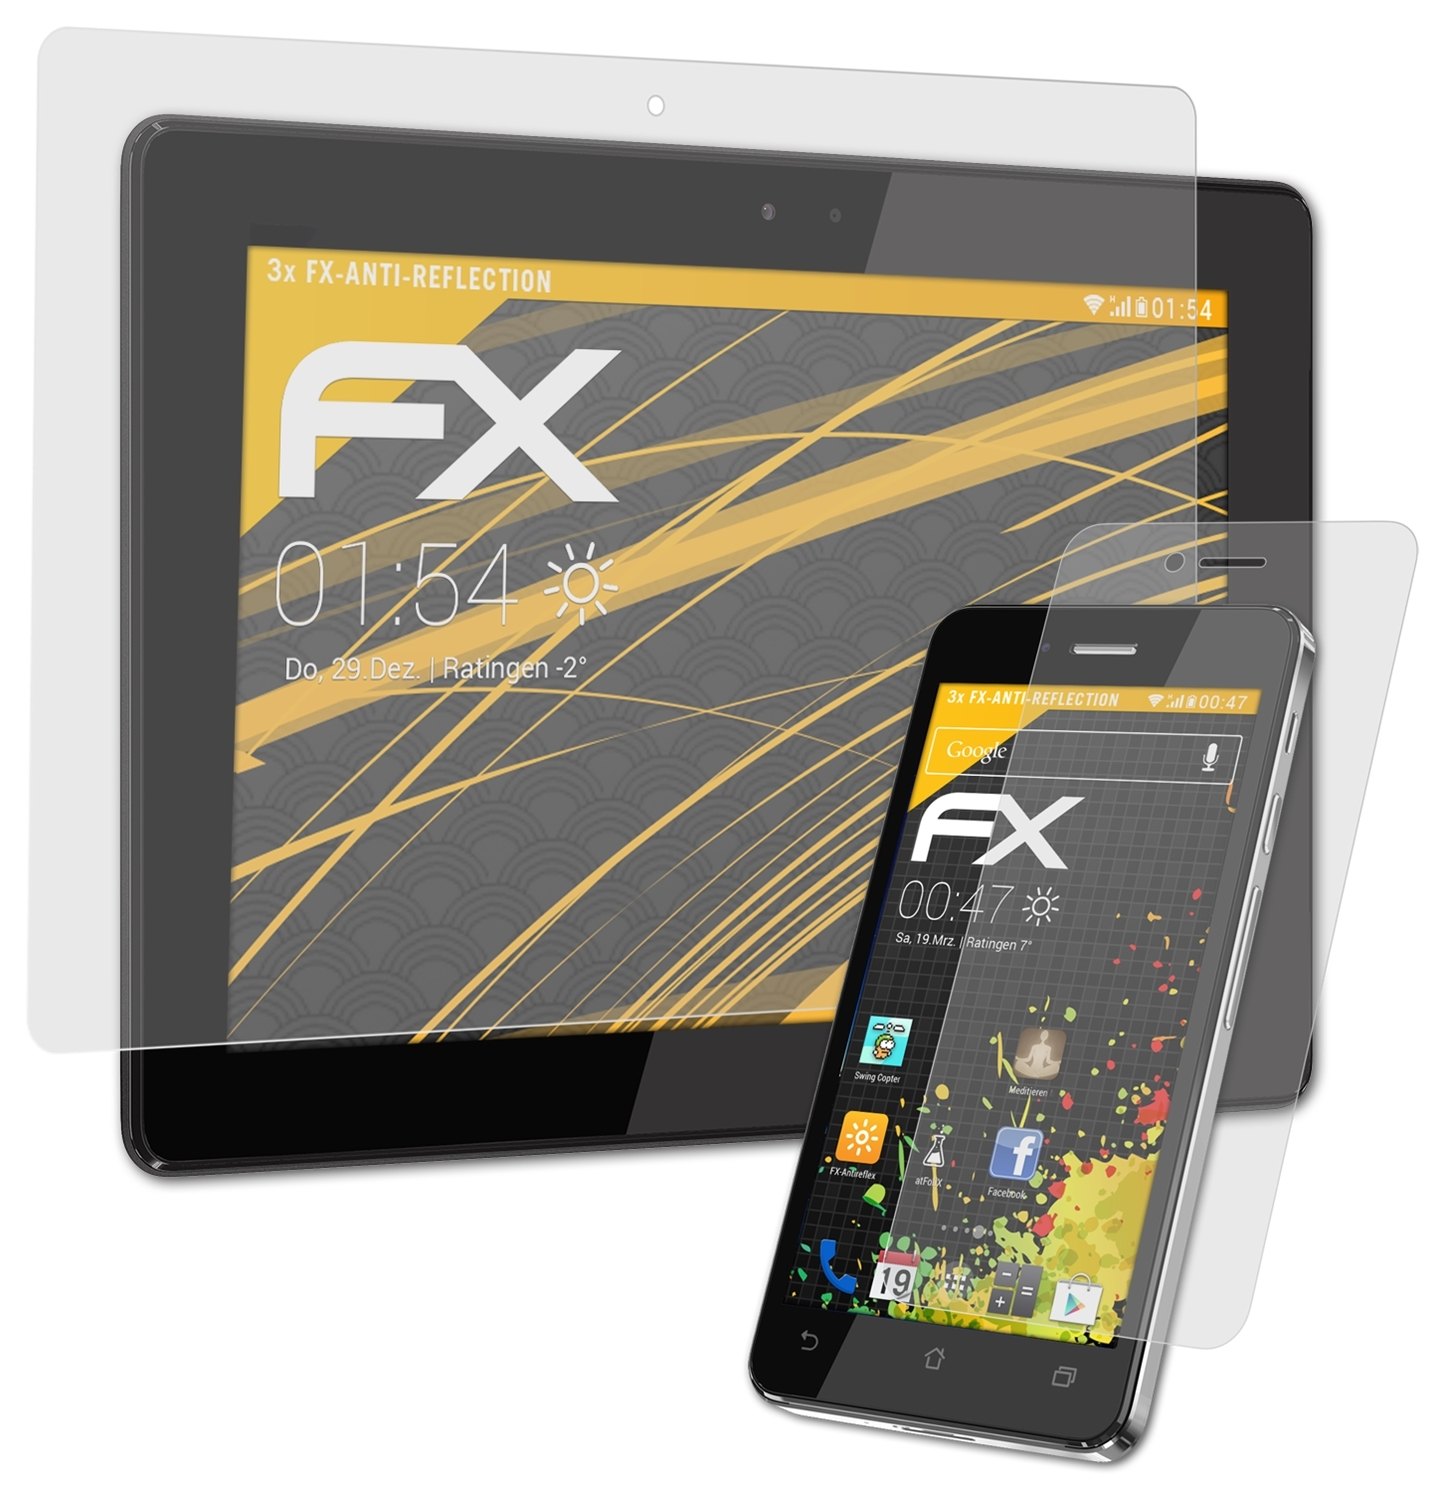 ATFOLIX 3x FX-Antireflex Asus Infinity (A86)) PadFone Displayschutz(für 2 (EU)